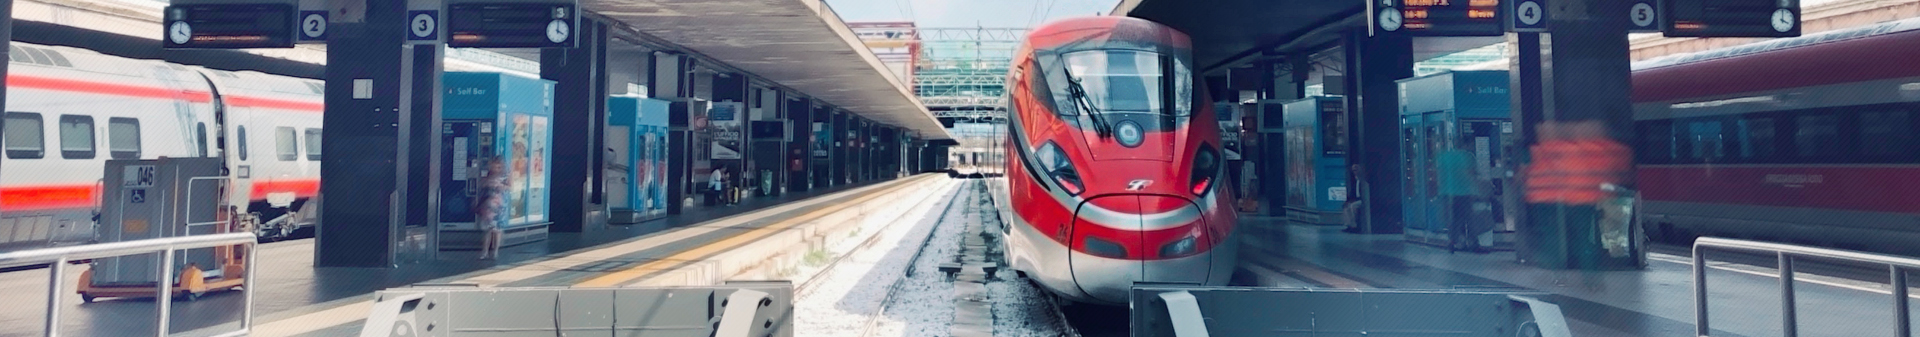 testate/tecnoteam-italia-materiale-ferroviario-attrezzature-ferrovie (1).jpg